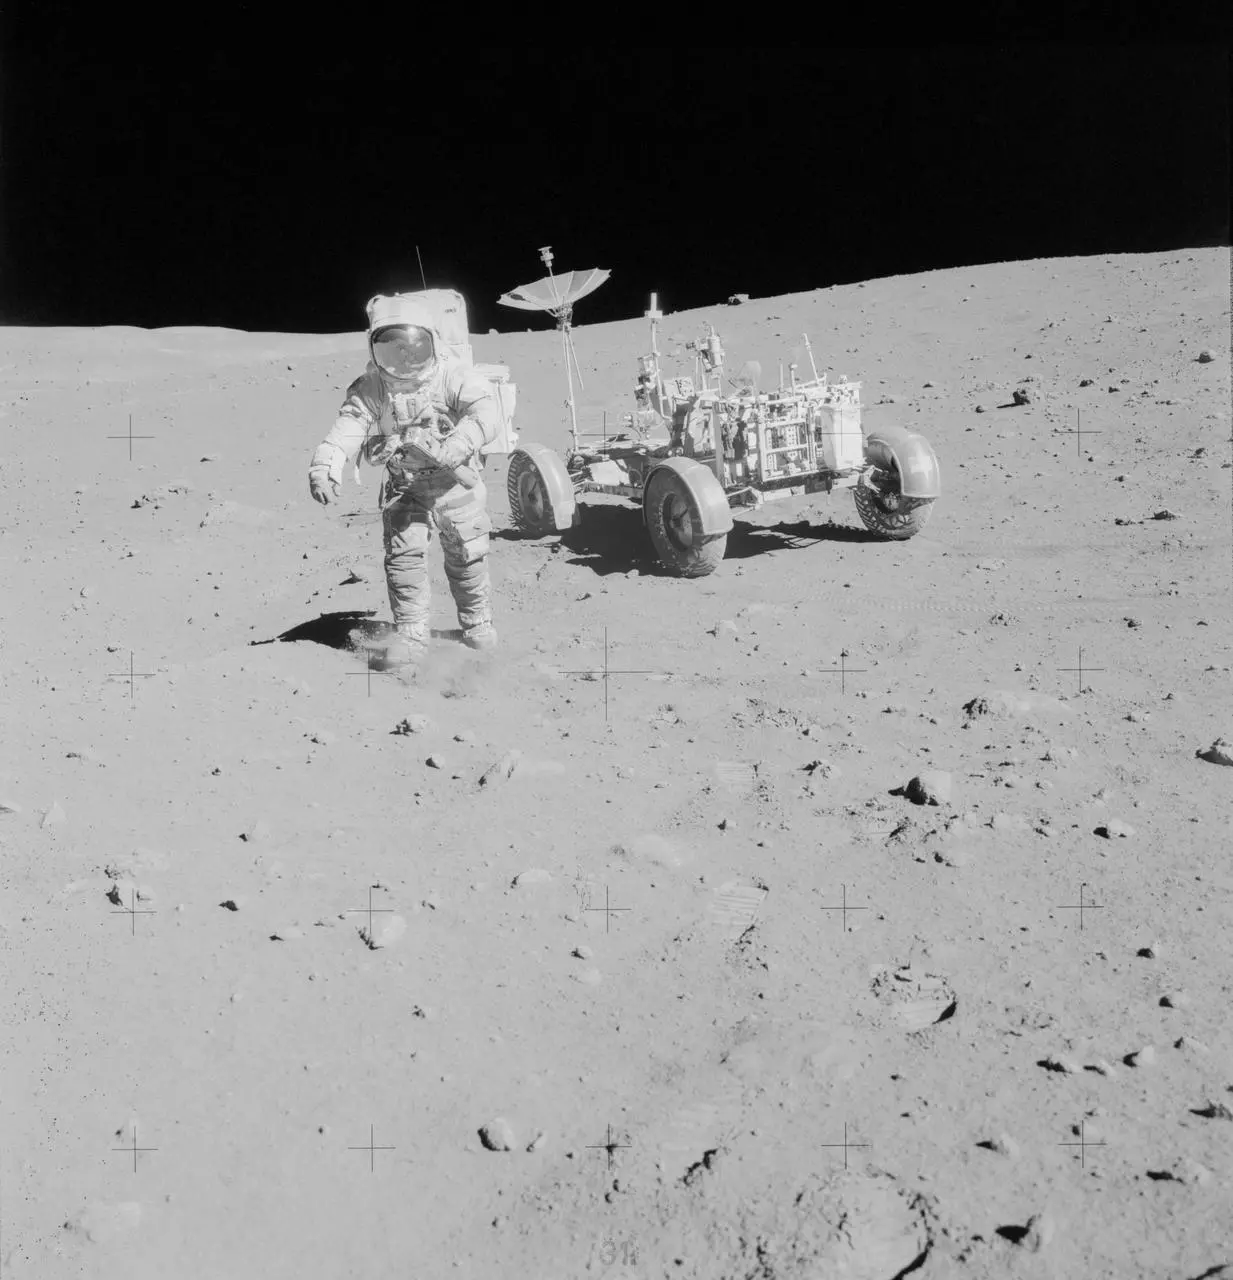 在月球上开车:阿波罗15号任务中的月球车_荒原之梦